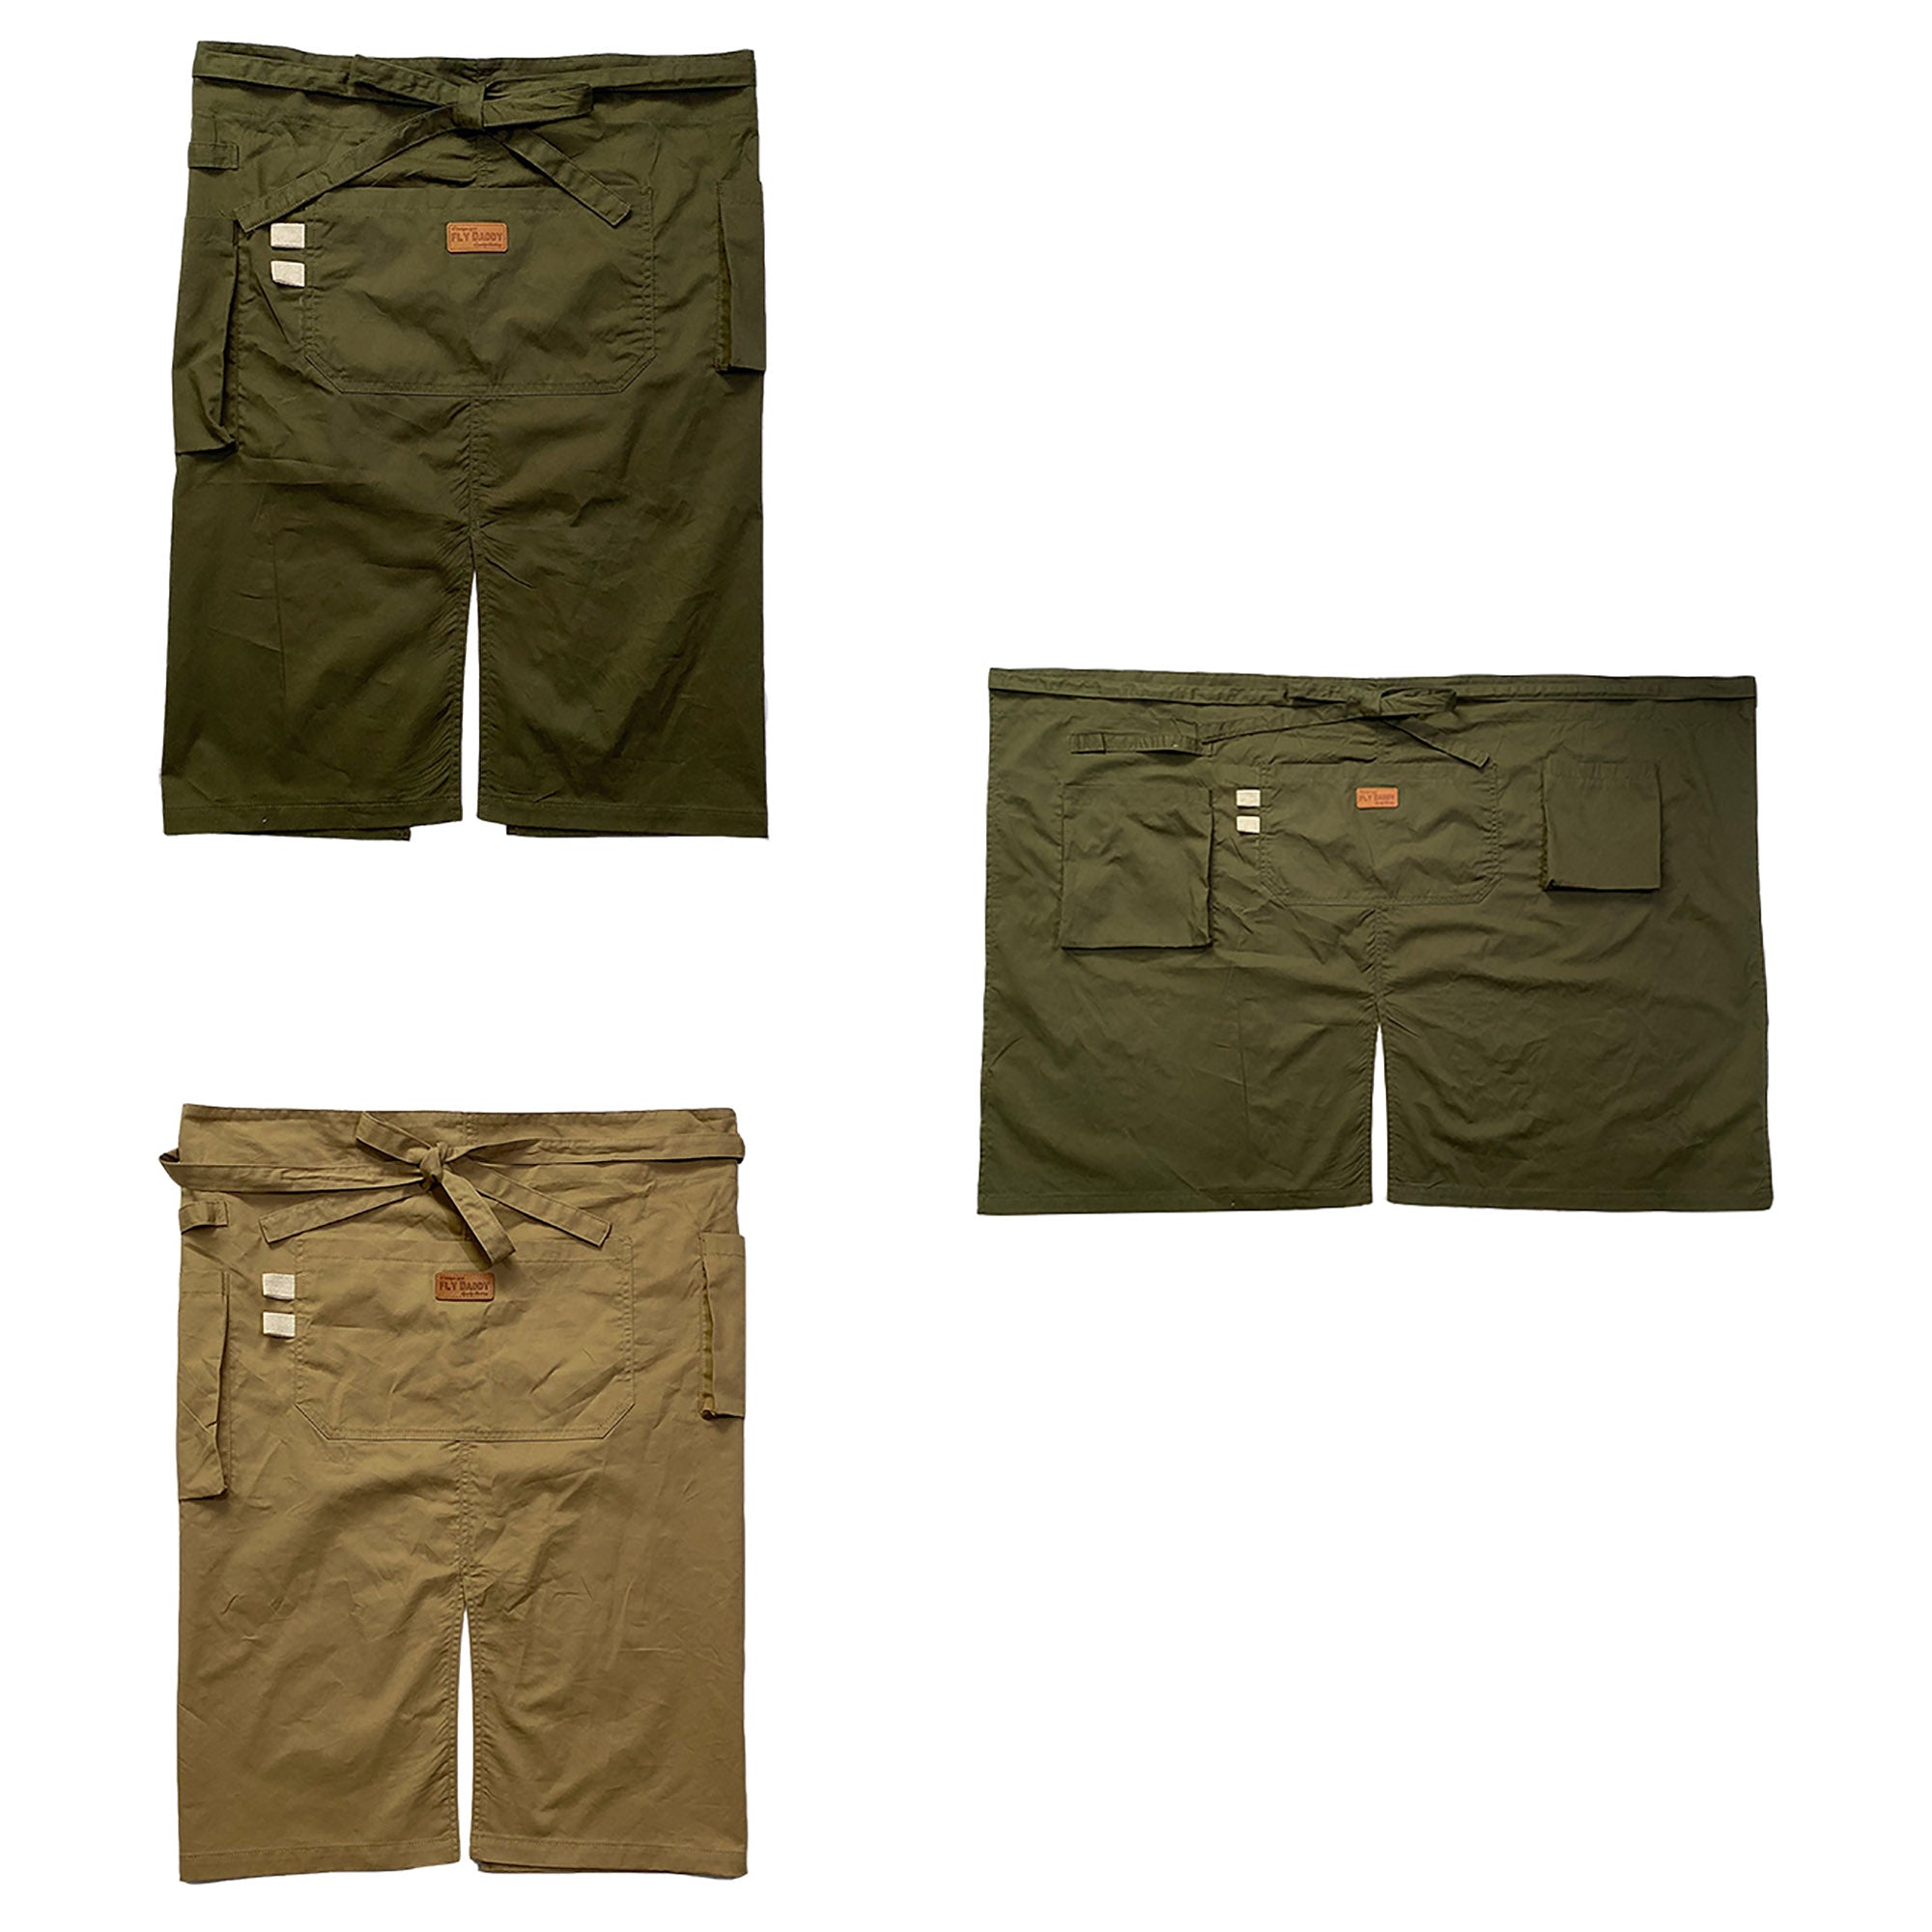 Unisex 2 style （Long + Short) Uniform Apron